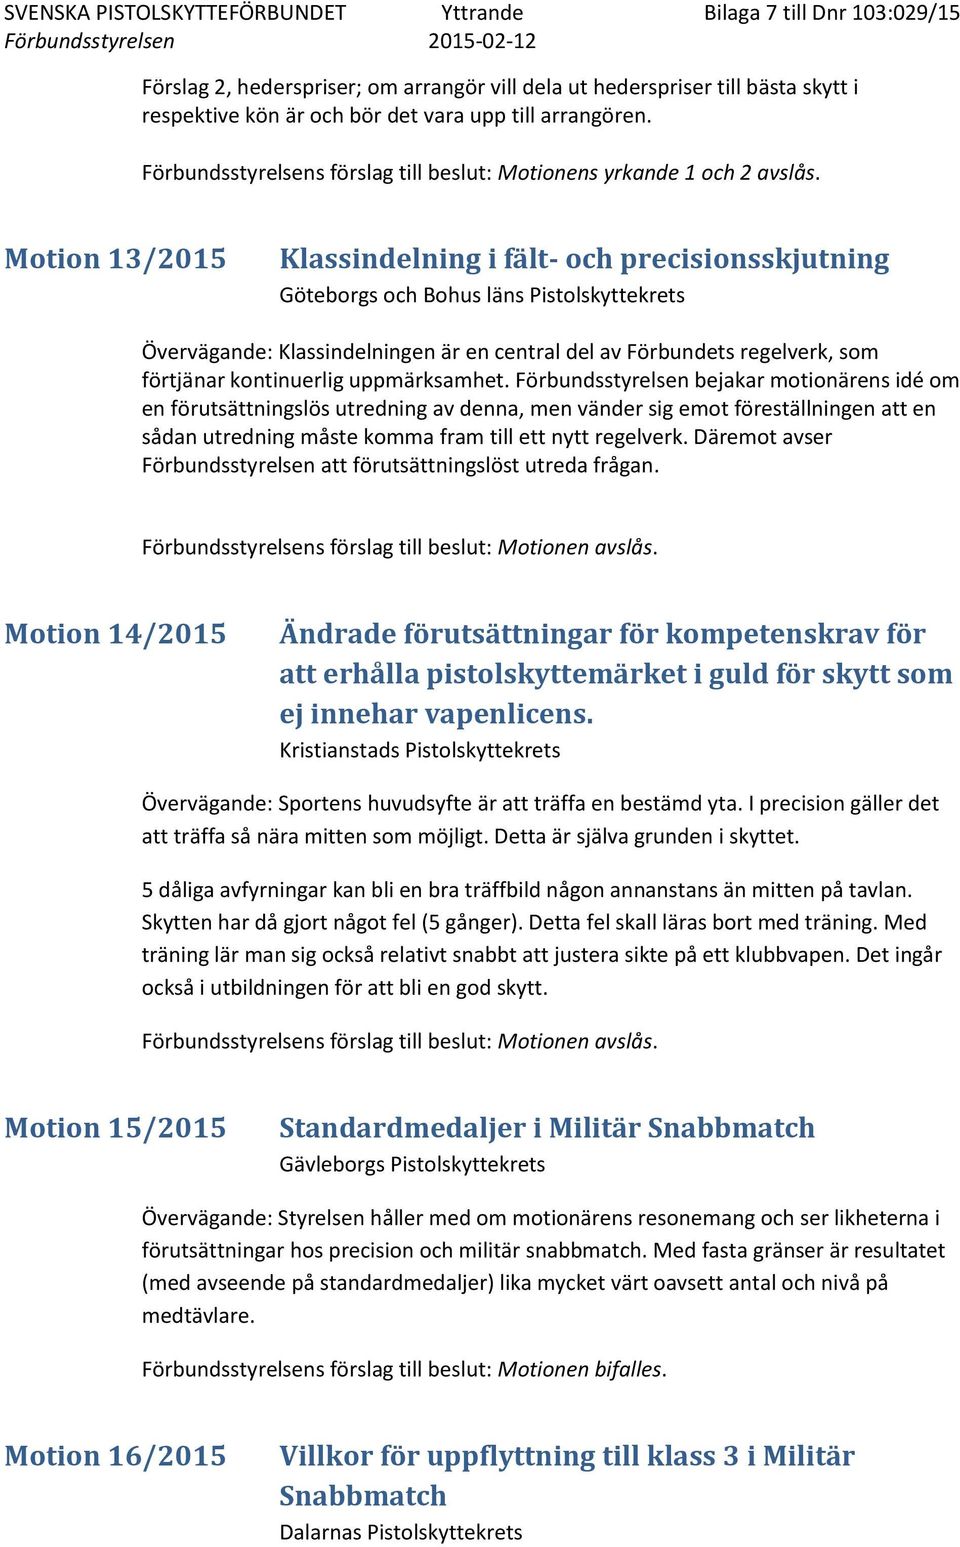 Motion 13/2015 Klassindelning i fält- och precisionsskjutning Göteborgs och Bohus läns Pistolskyttekrets Övervägande: Klassindelningen är en central del av Förbundets regelverk, som förtjänar